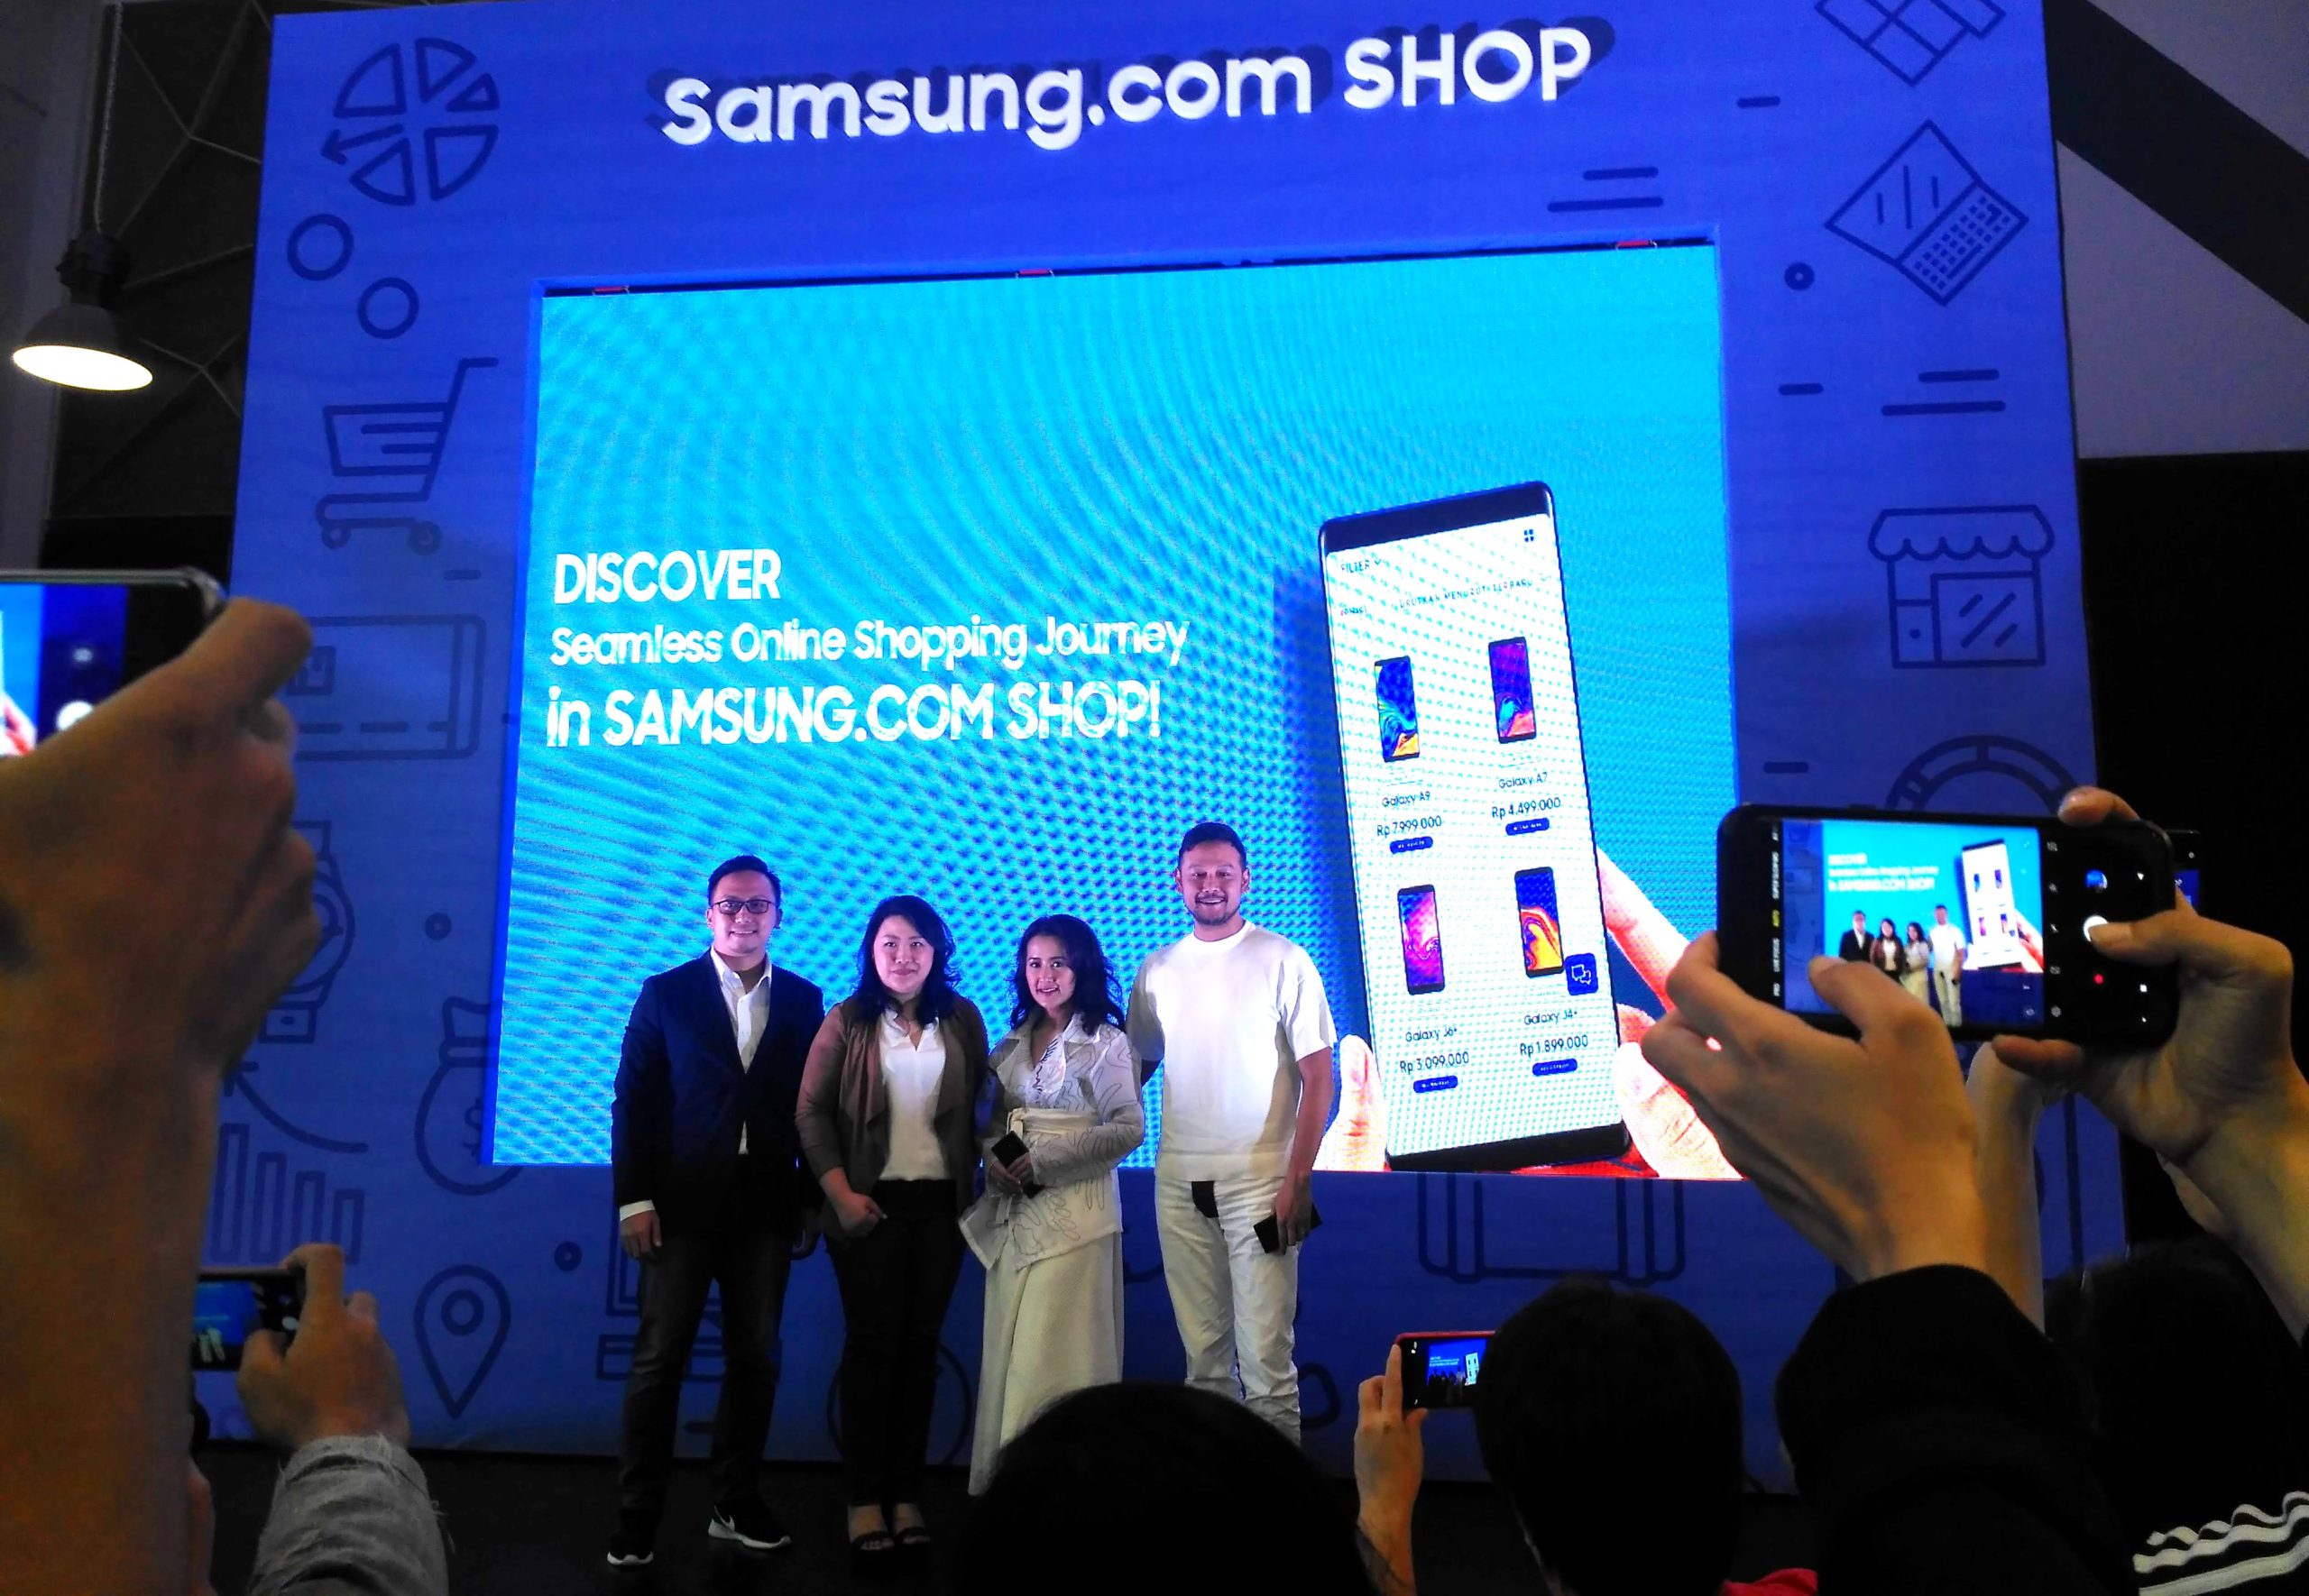 Samsung punya toko online, ada garansi dan bebas ongkir